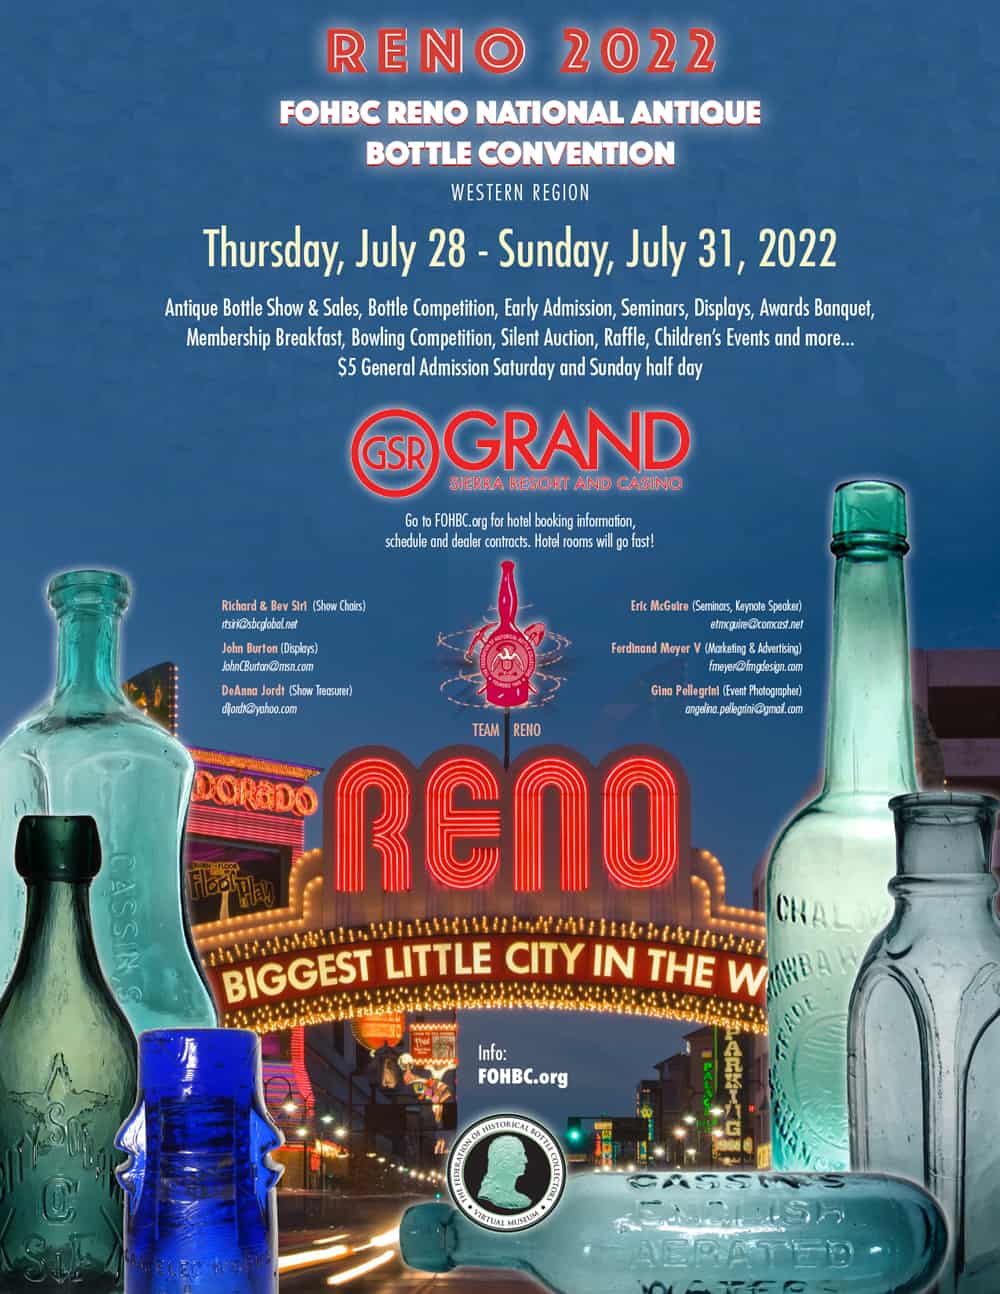 FOHBC Reno 2022 National Antique Bottle Convention